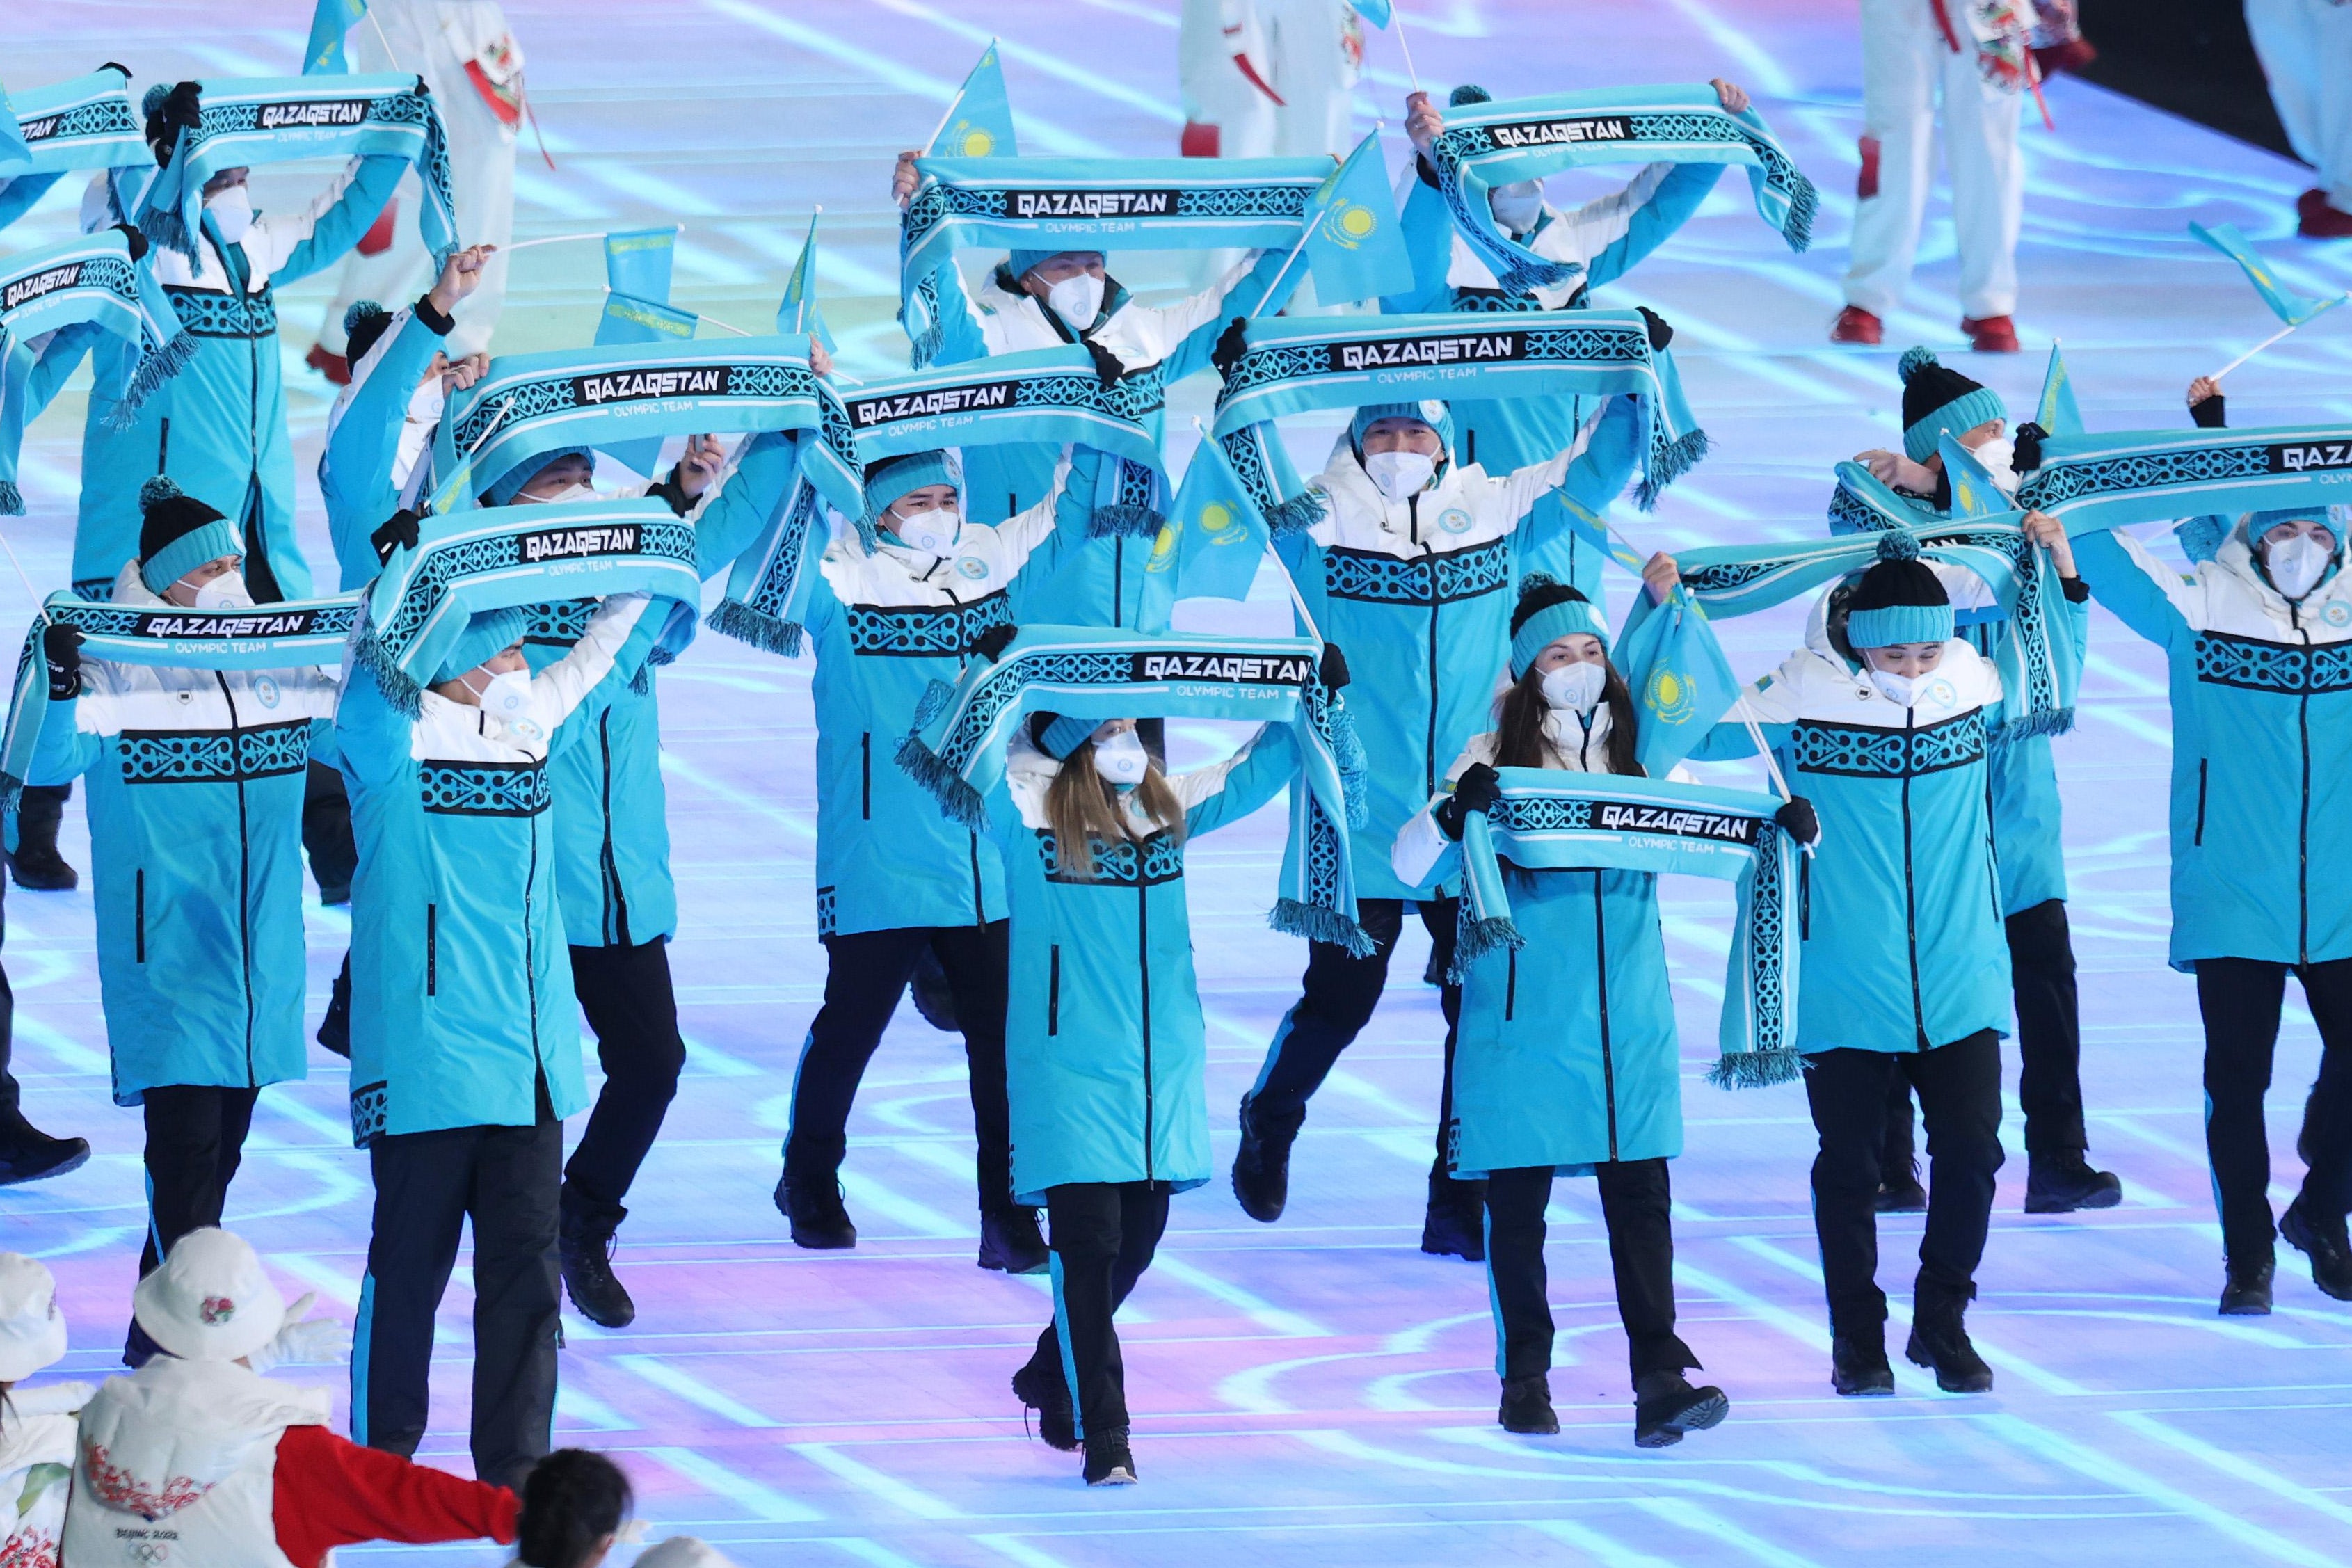 Members of Team Kazakhstan wave their scarves.